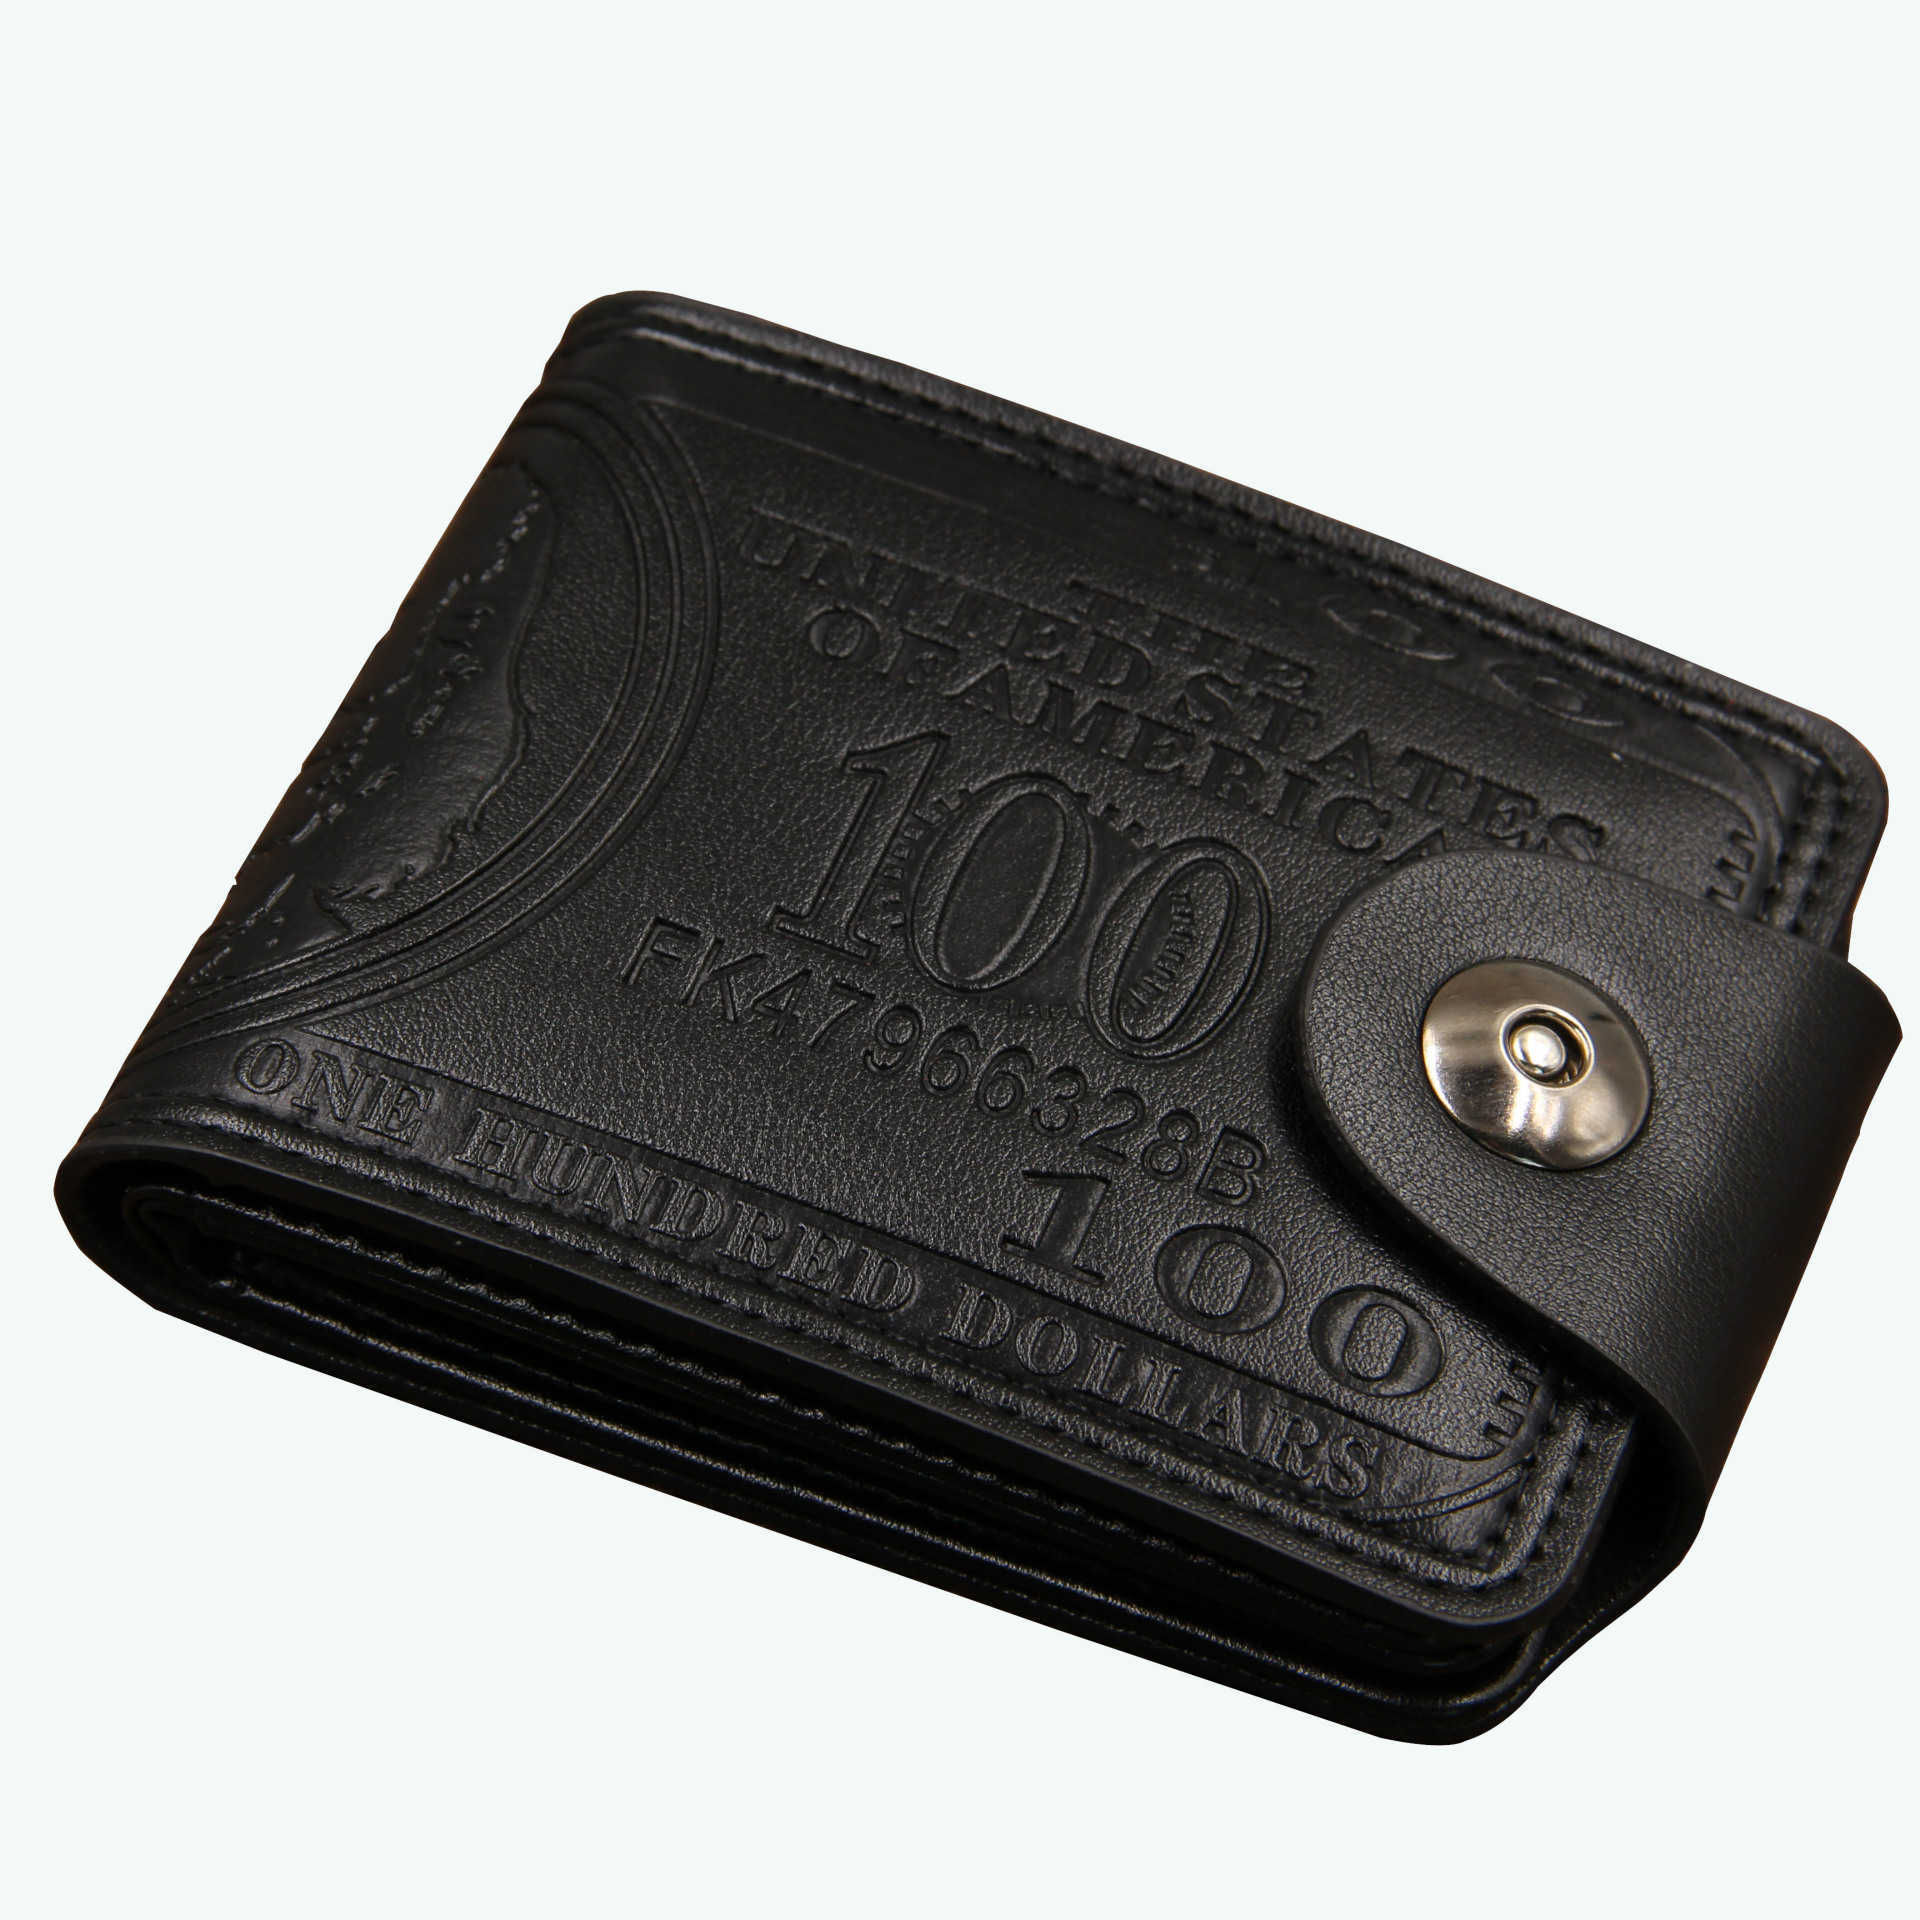 Erkekler için lüks Marka Mini tasarımcı Cüzdan toptan erkek On Yuan Mağaza Pu erkek Sıfır Toka Yatay Çanta mans cüzdanlar hakiki deri